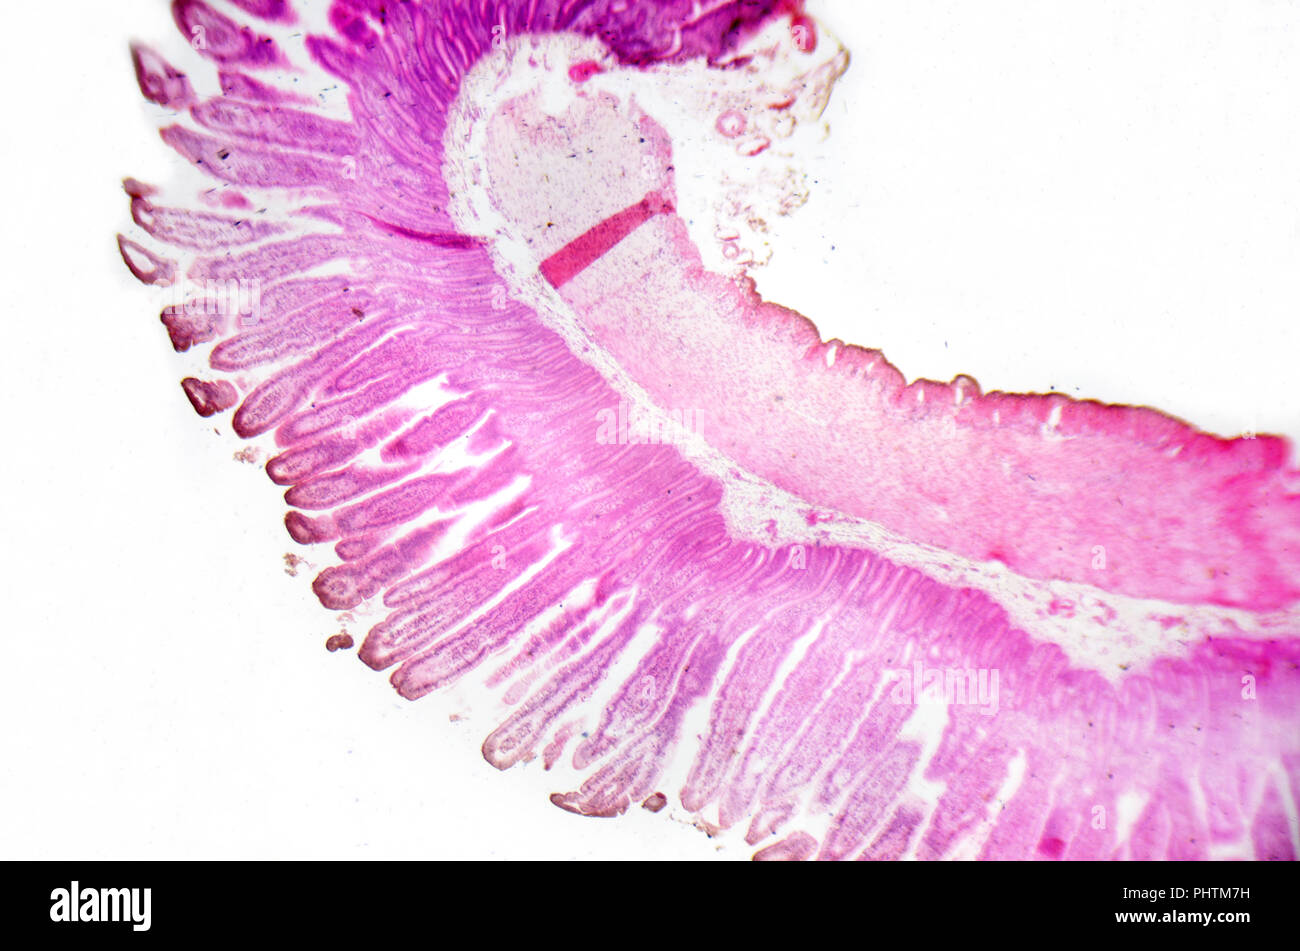 Photographie en microscopie électronique. La section transversale de l'intestin grêle. Banque D'Images